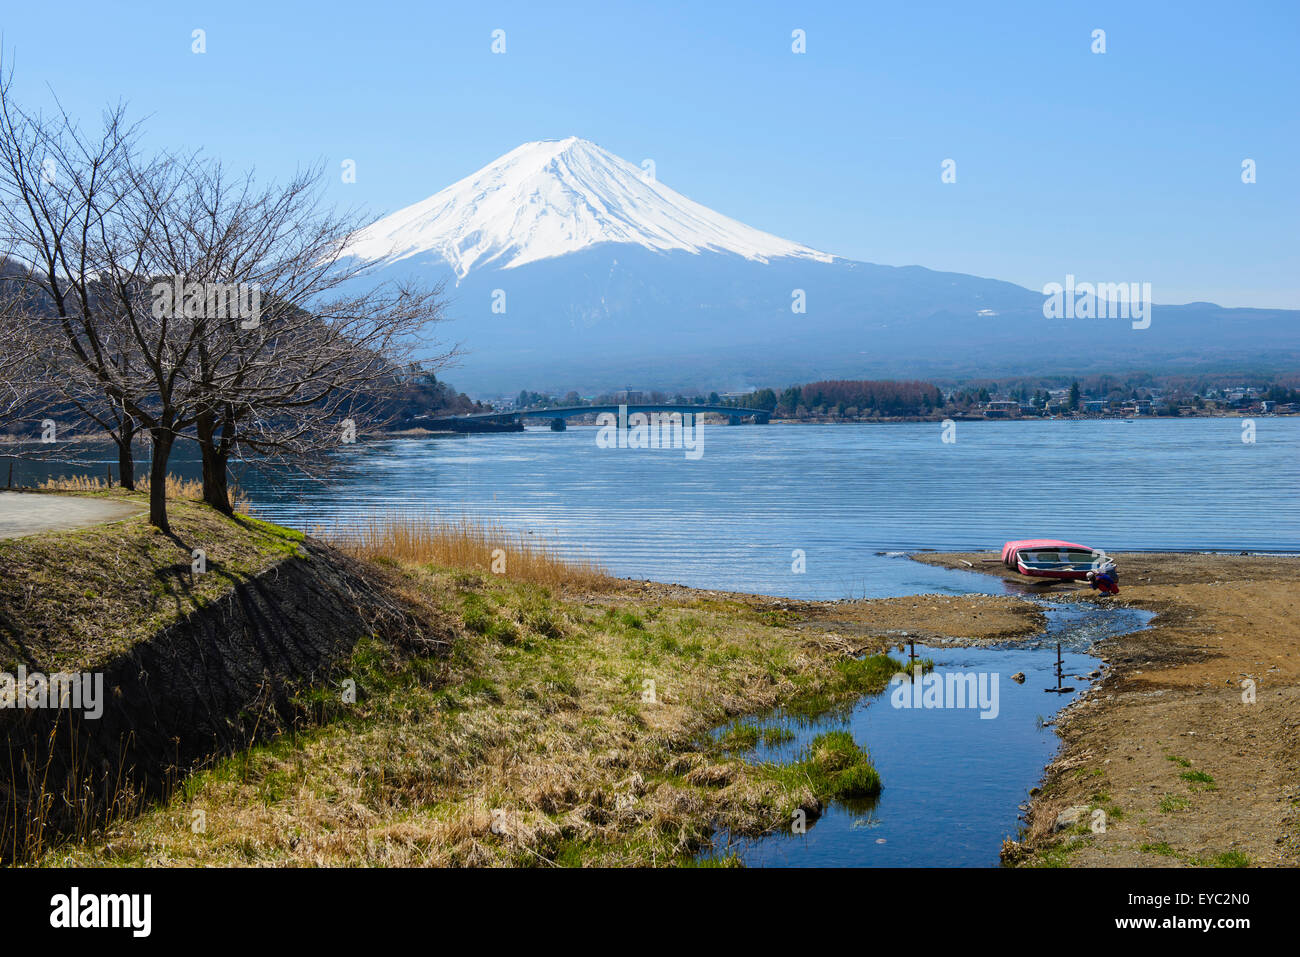 Mt. Fuji at Lake kawaguchi Stock Photo